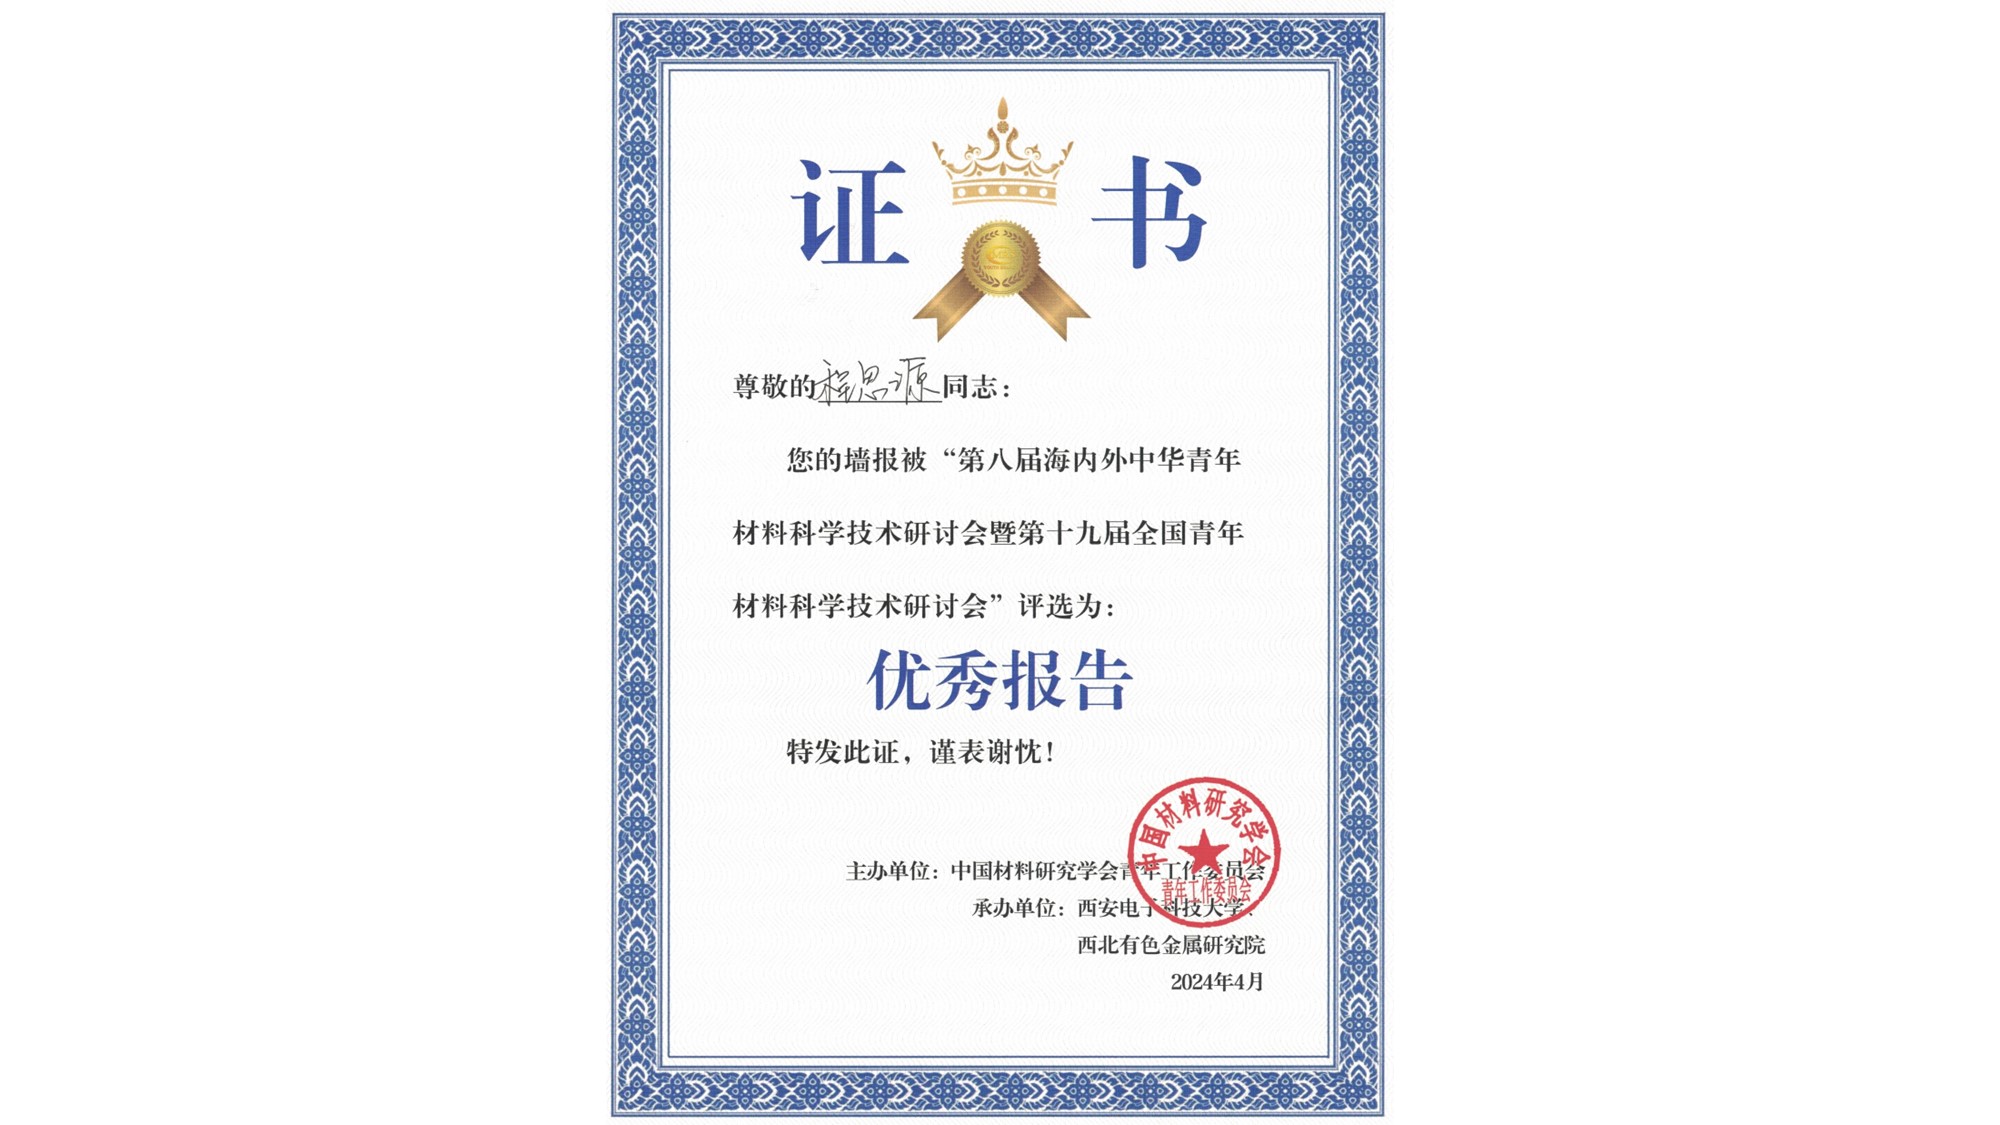 祝贺程思源在第八届海内外中华青年材料科学技术研讨会喜获荣誉奖